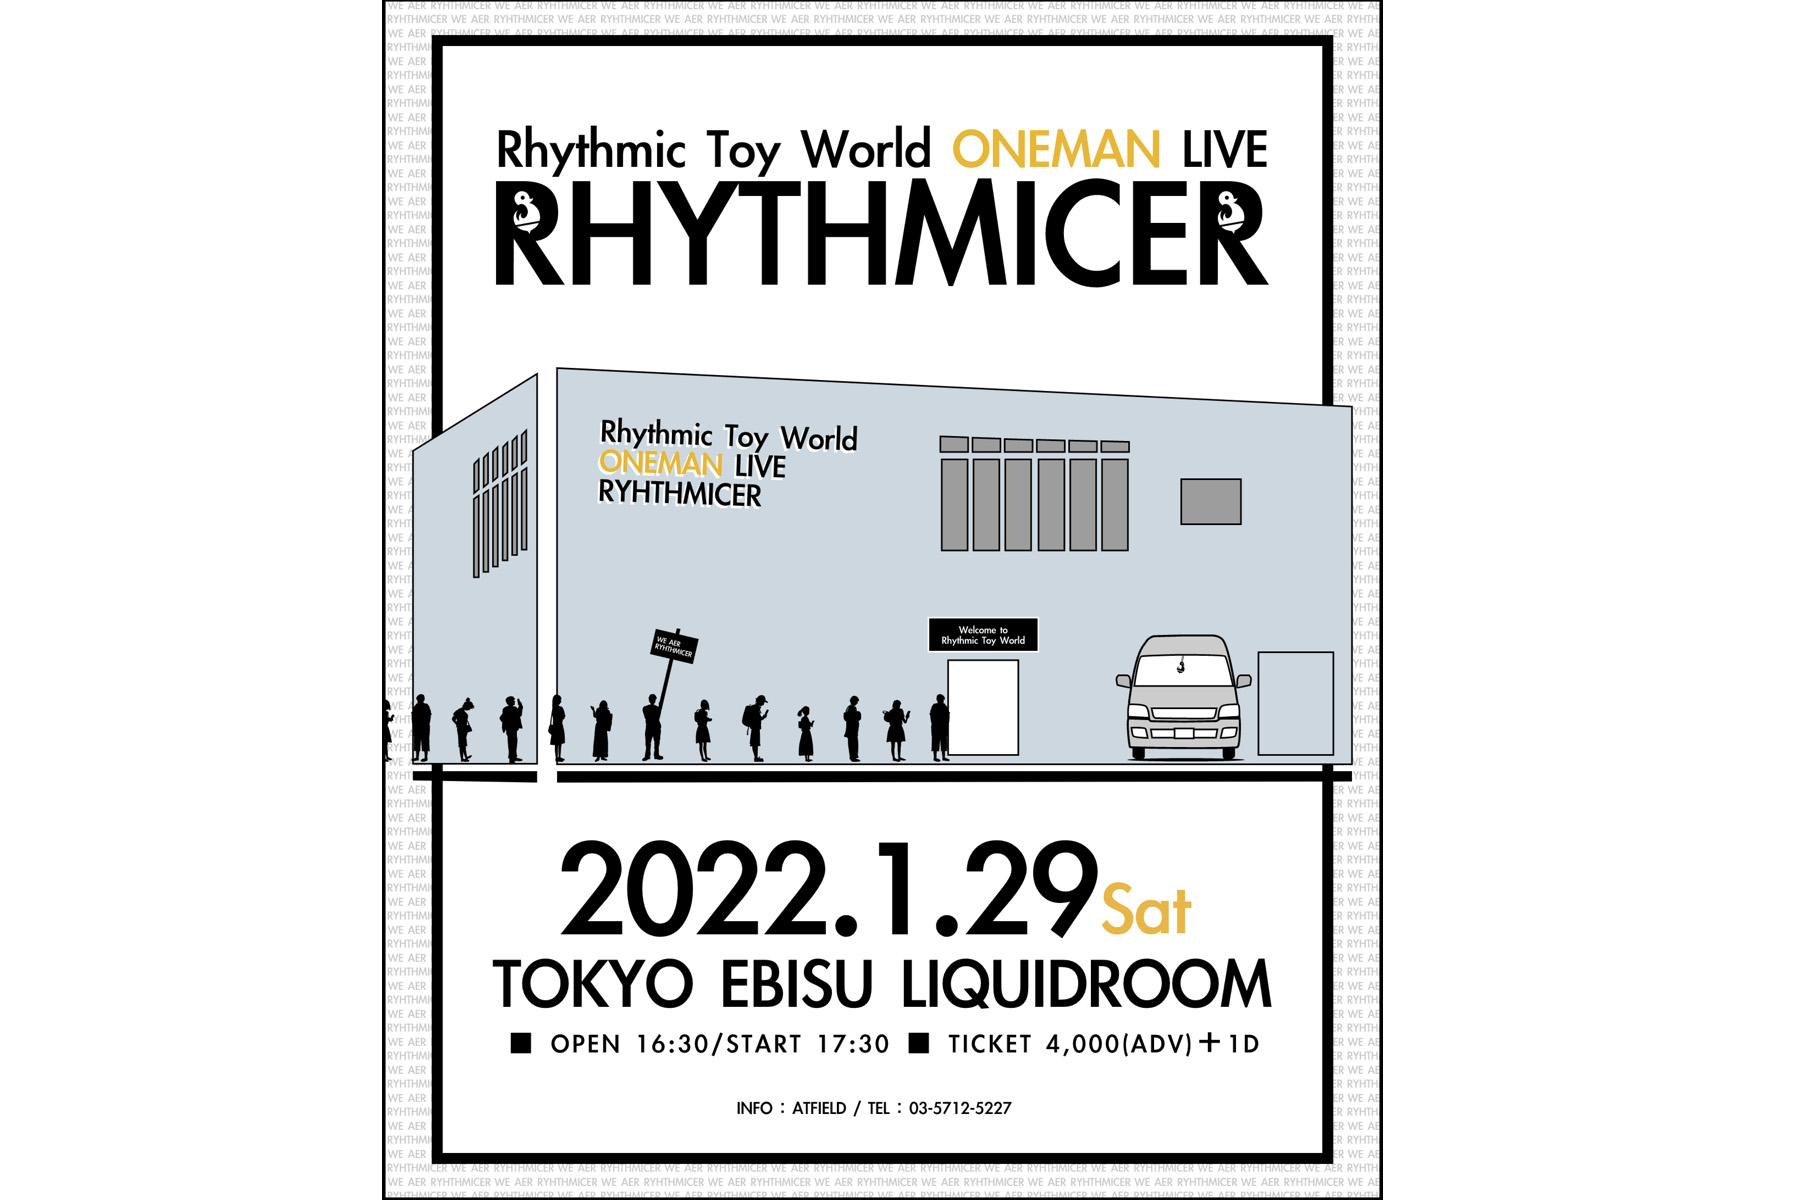 1.29 Sat. Rhythmic Toy World